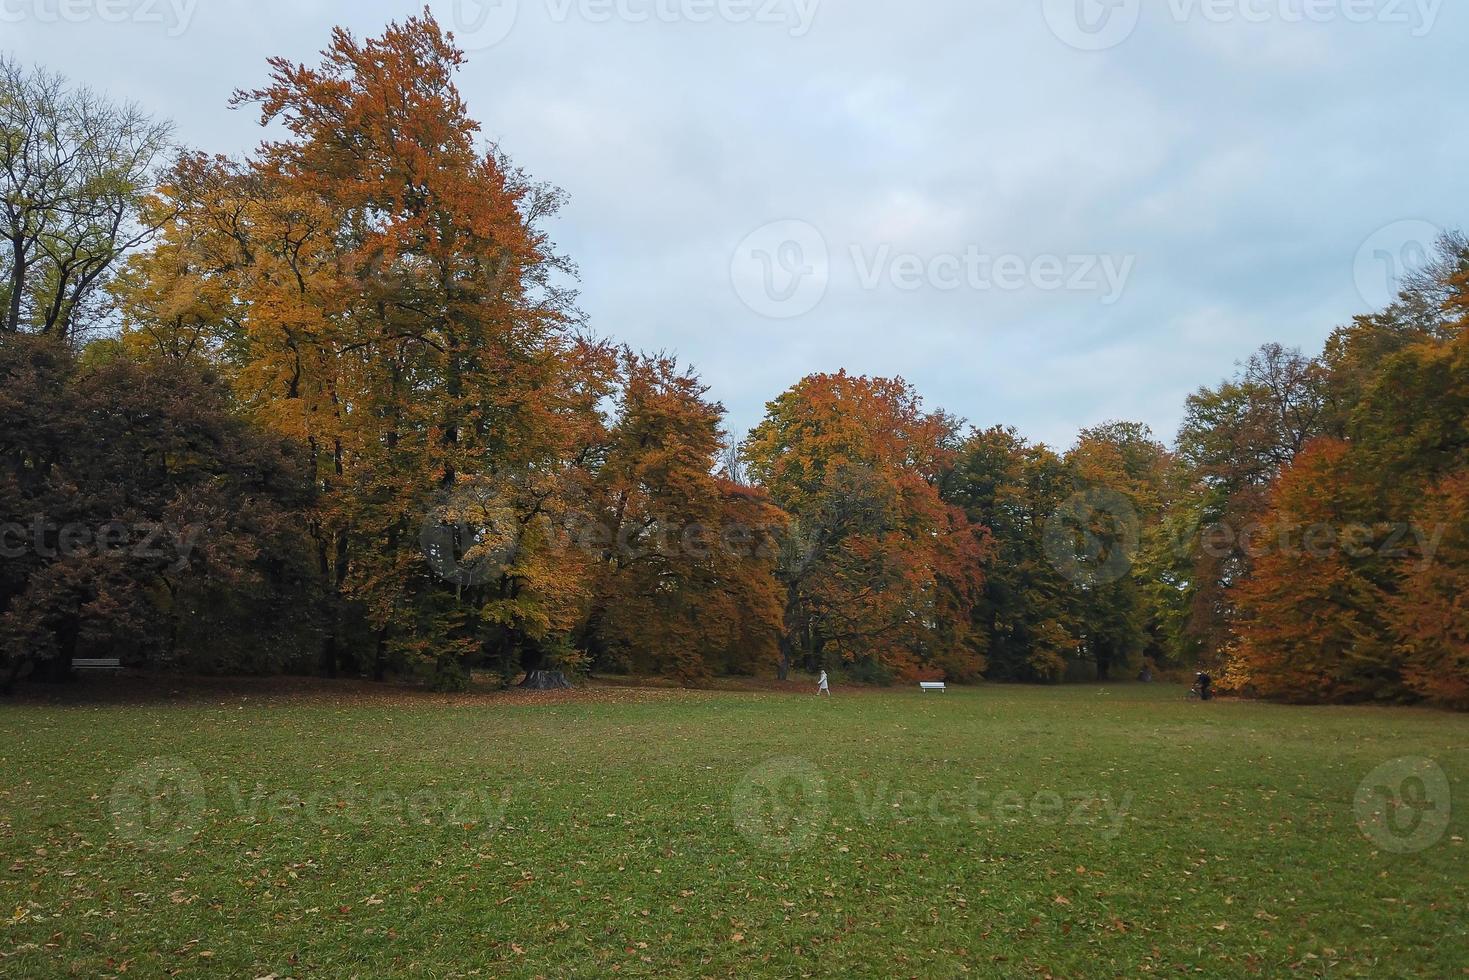 herfst bomen en bladeren met kleurrijk gebladerte in de park. foto